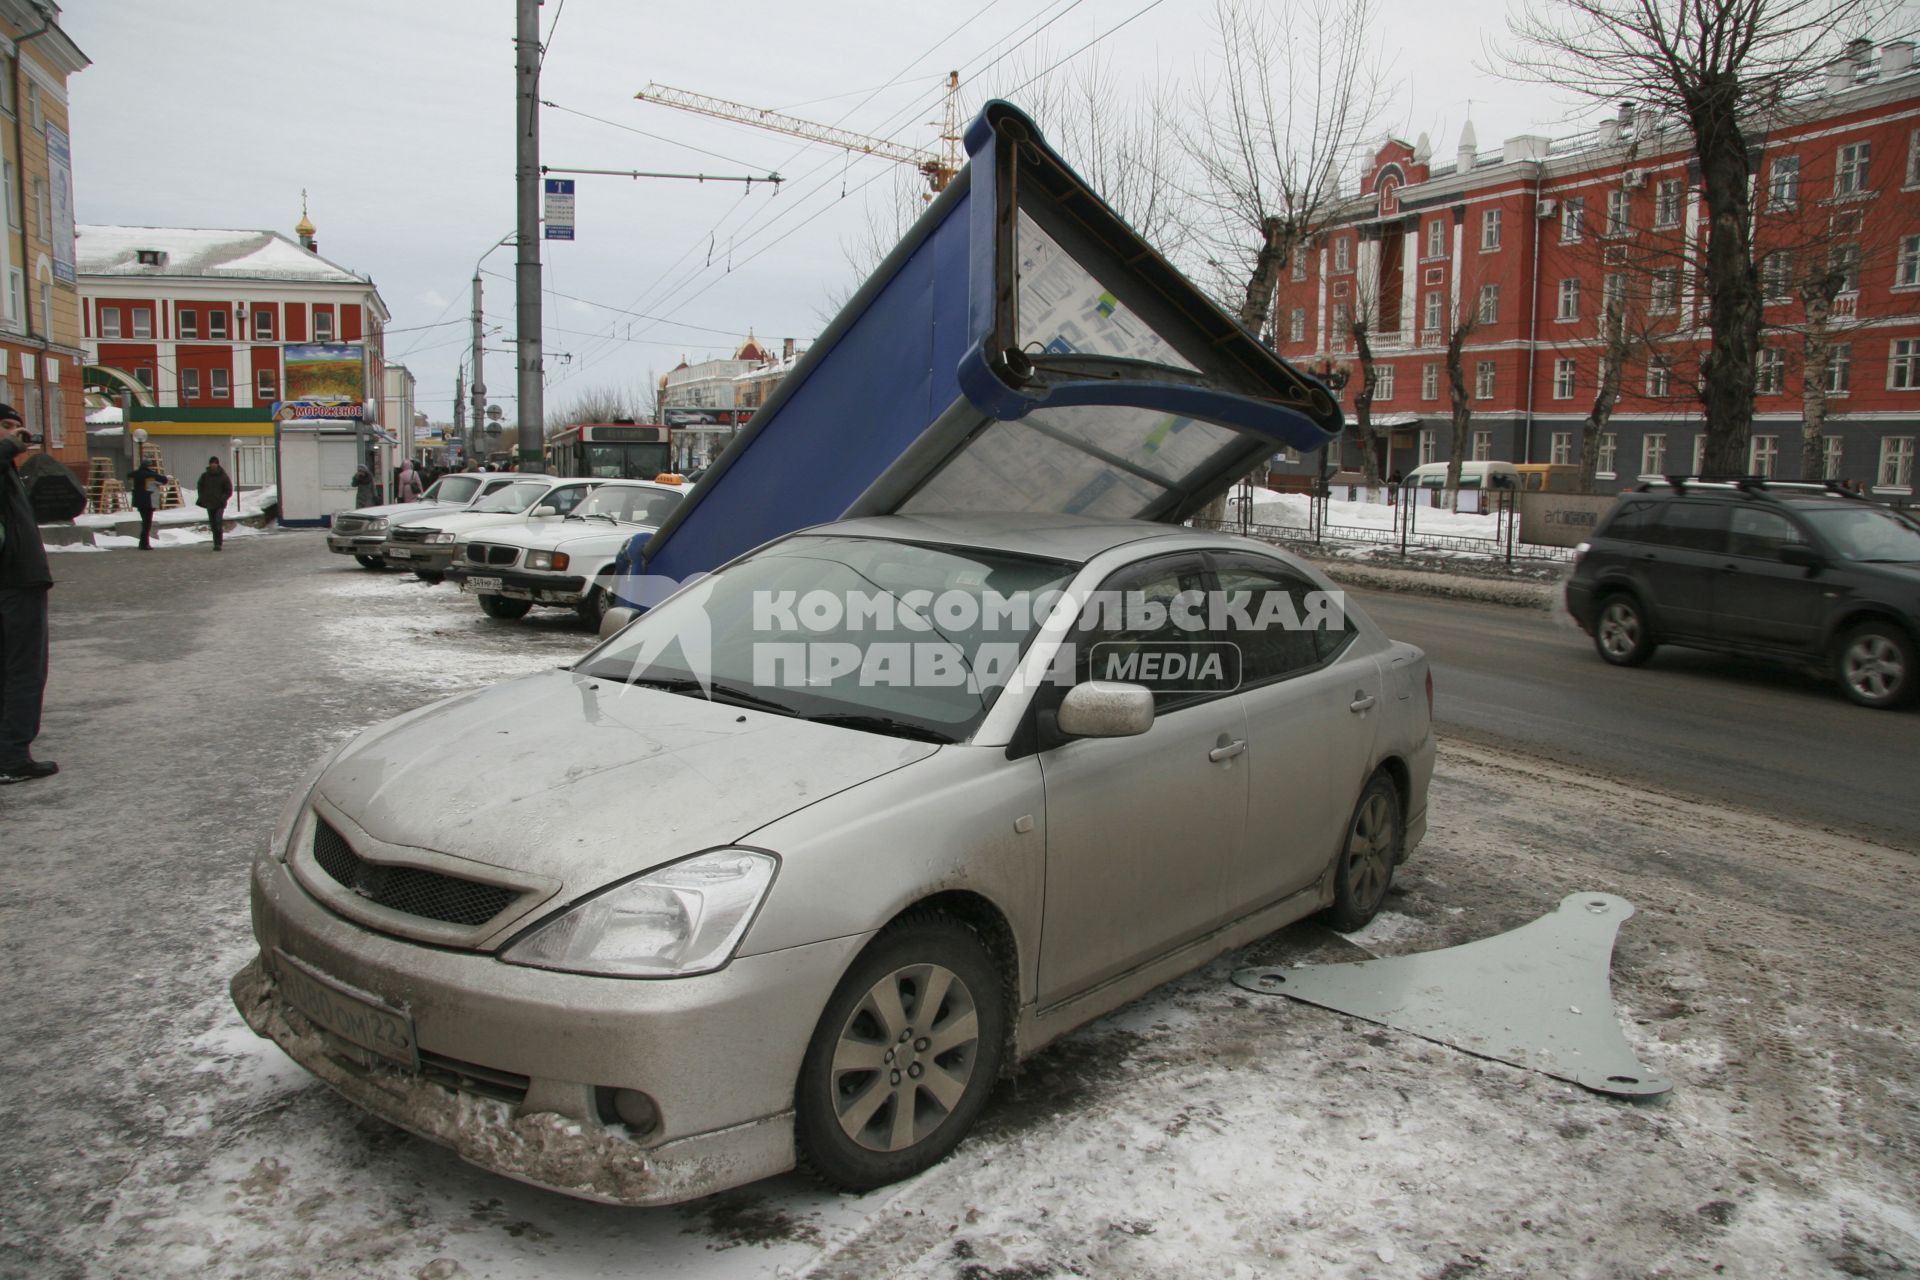 Барнаул.  Рекламная тумба, упавшая на припаркованный рядом автомобиль.